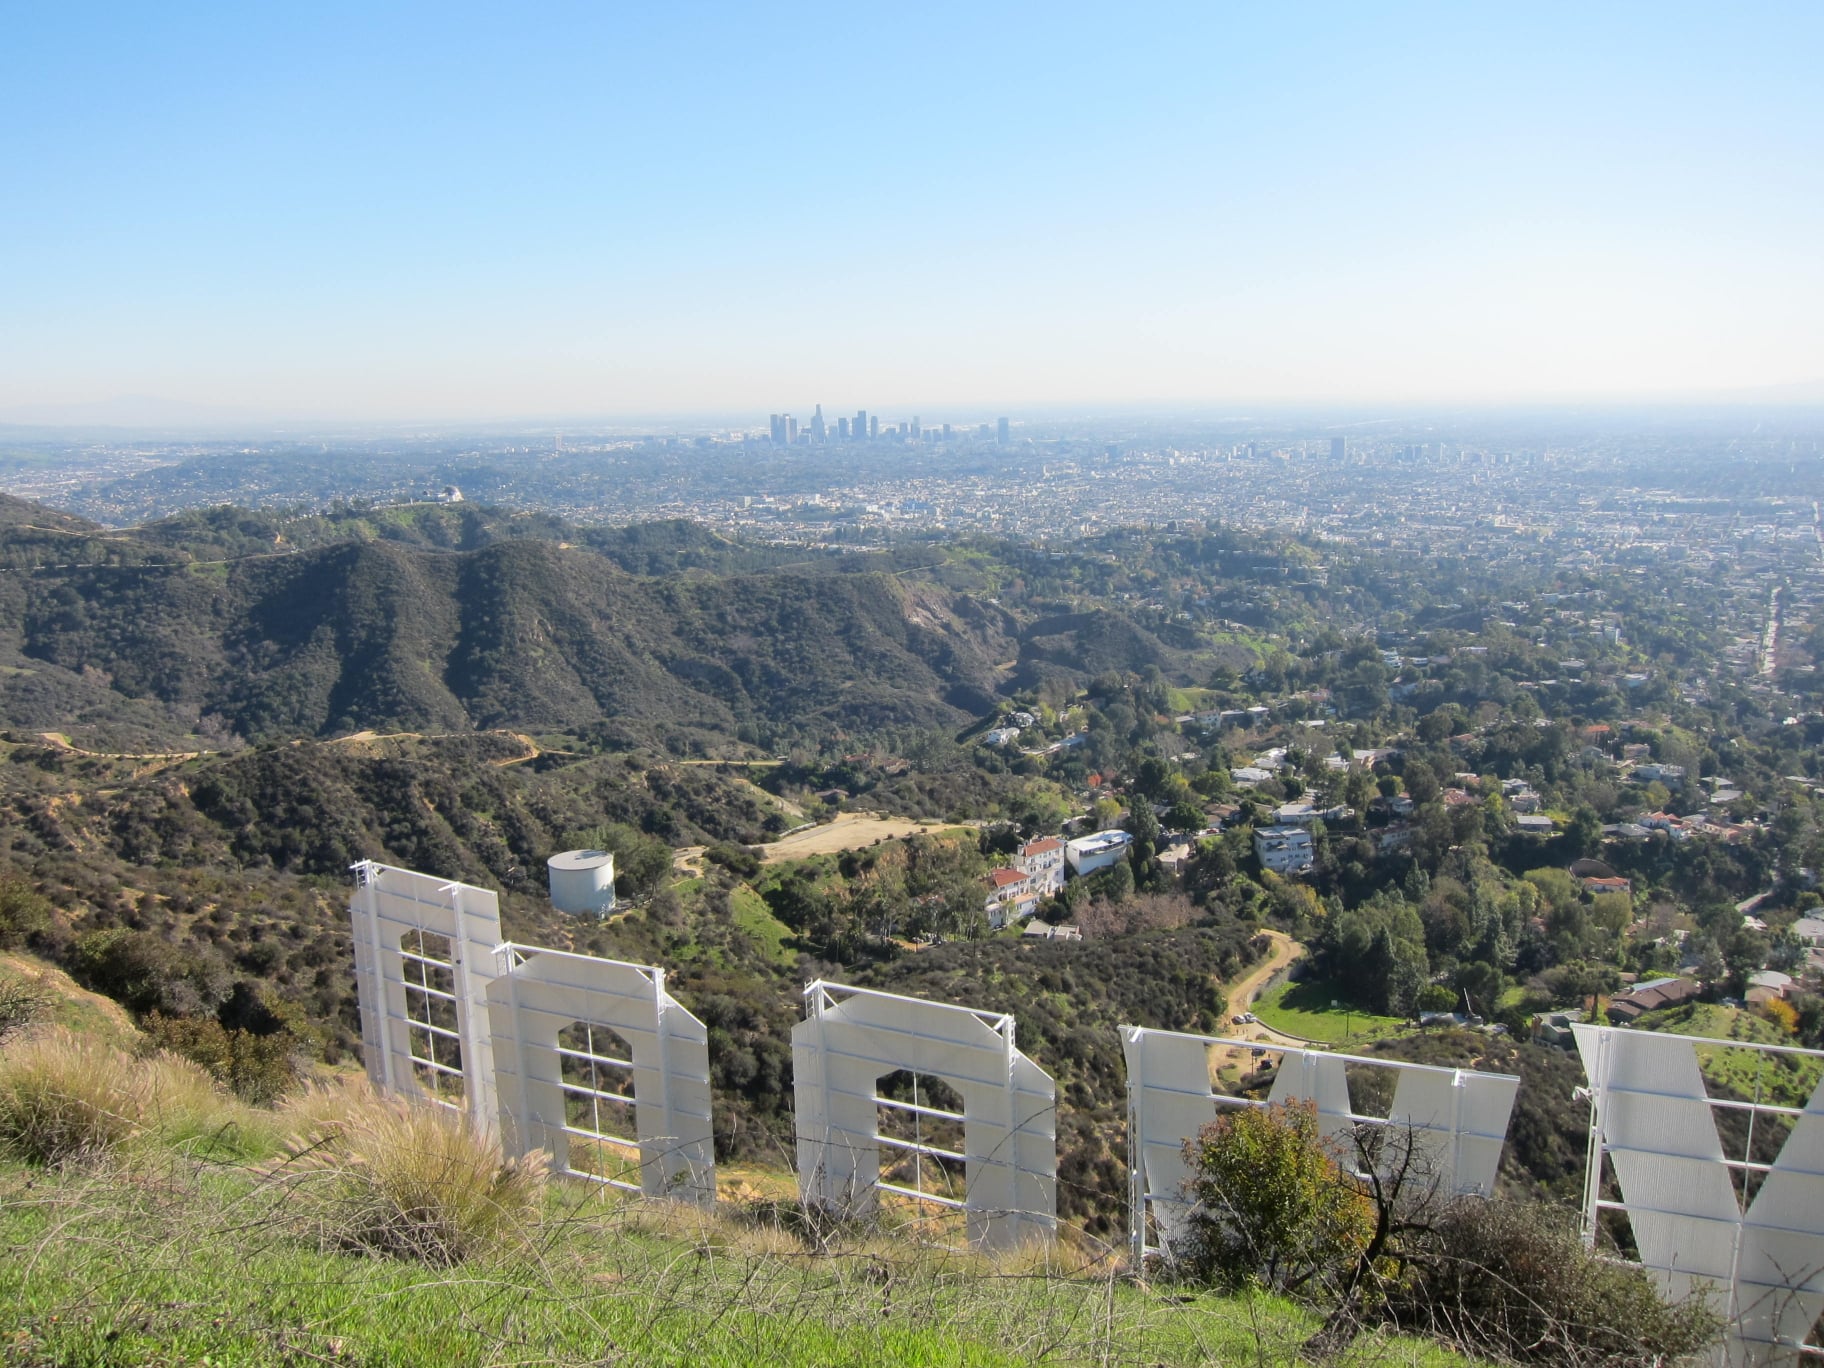 ロサンゼルスと言えば「Hollywoodサイン」 ロサンゼルスにはハイキングコースが無数にある。もちろんHollywoodサインにも。ハイキングのほかに、サーフィン・サイクリング・ジョギング・ピクニックやバーベキューは週末の定番。